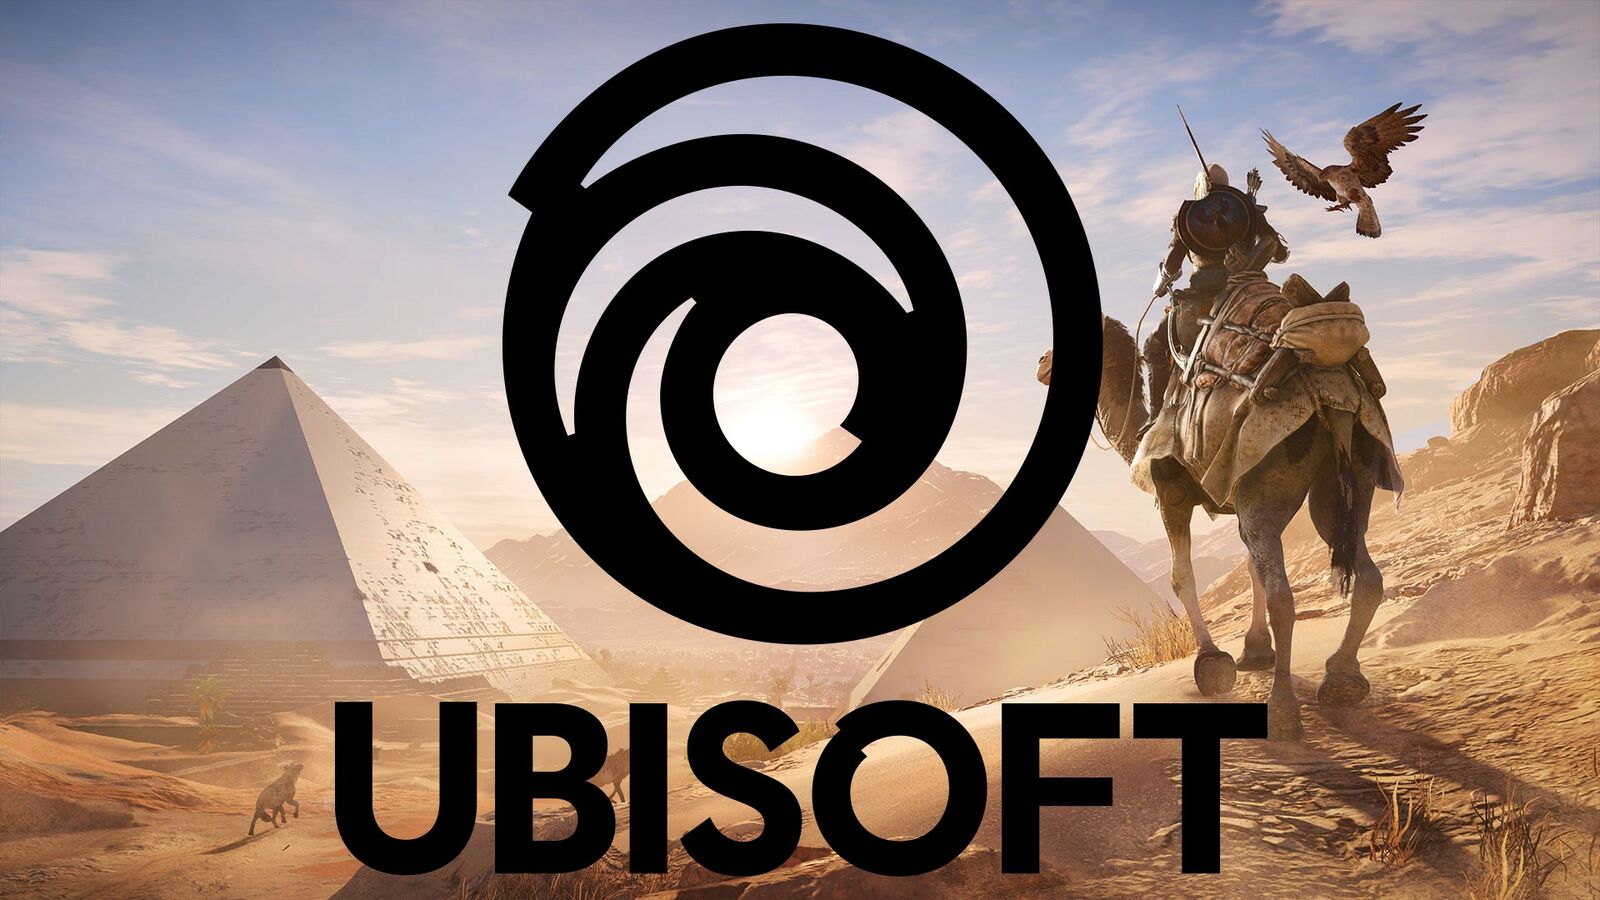 https://nftgames.net/wp-content/uploads/2022/09/Ubisoft.jpg